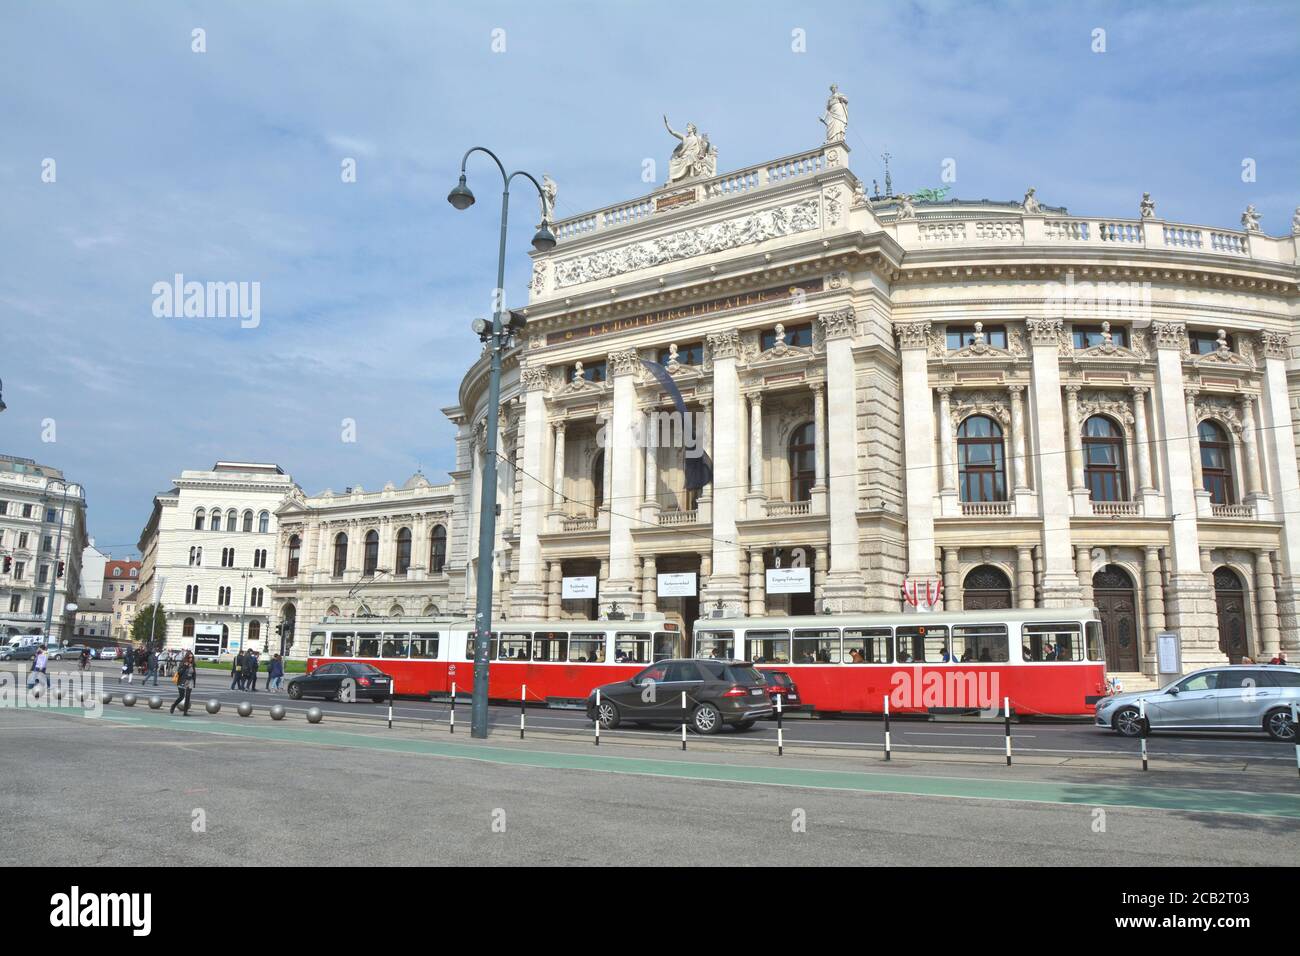 WIEN, ÖSTERREICH - 03. MAI 2016 : das Burgtheater, das Österreichische Nationaltheater in Wien. Rote Straßenbahn fährt am Theatergebäude vorbei. Stockfoto